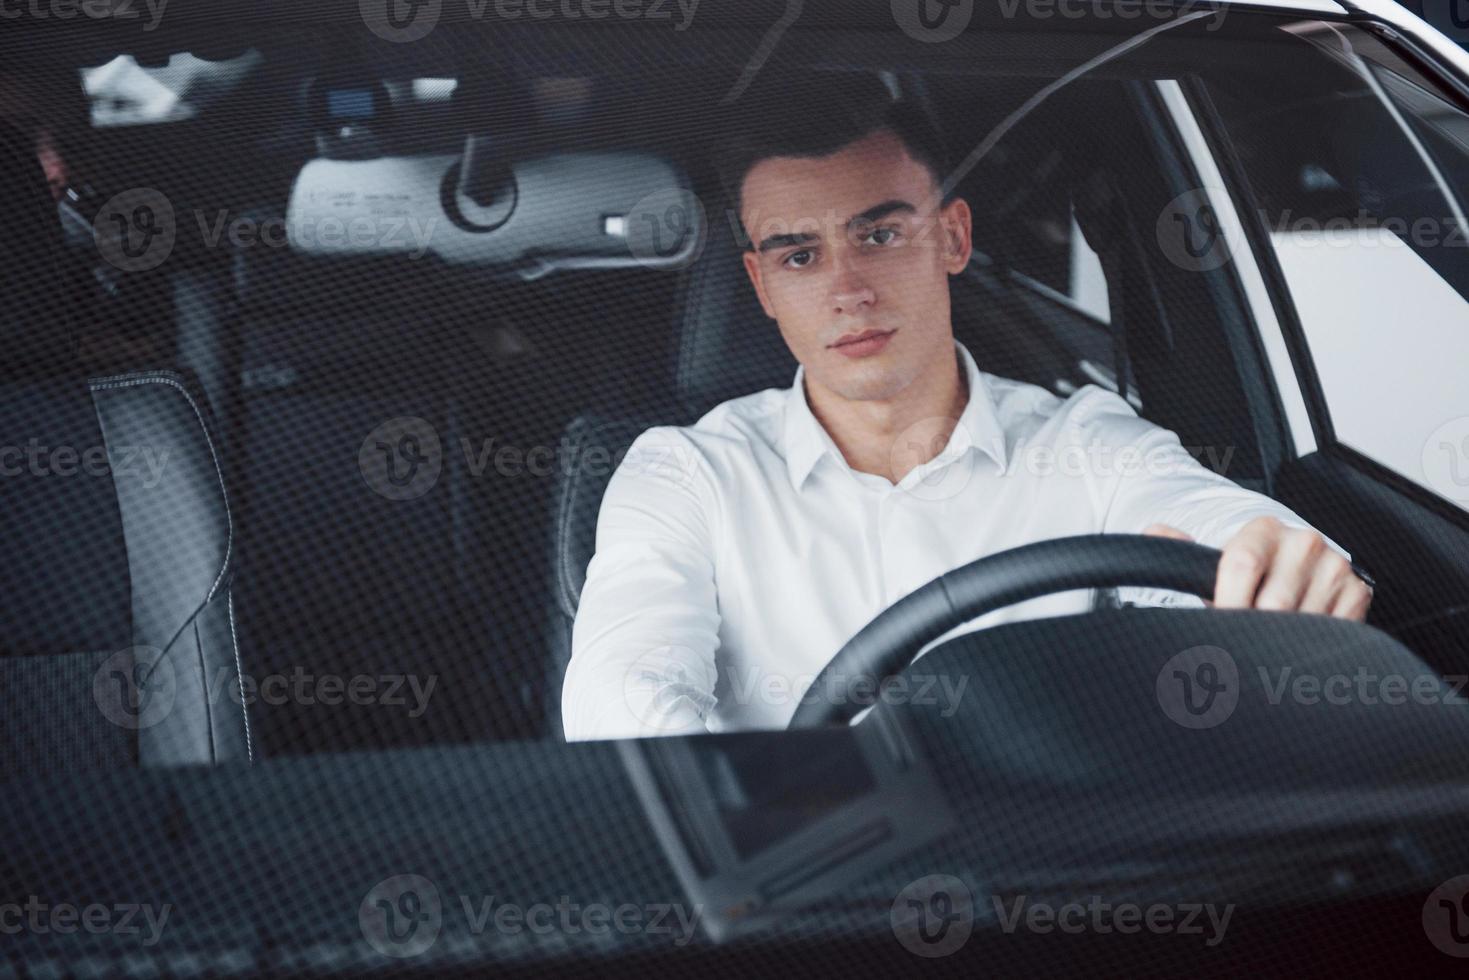 um jovem sentado em um carro recém-comprado segurando as mãos em um leme foto